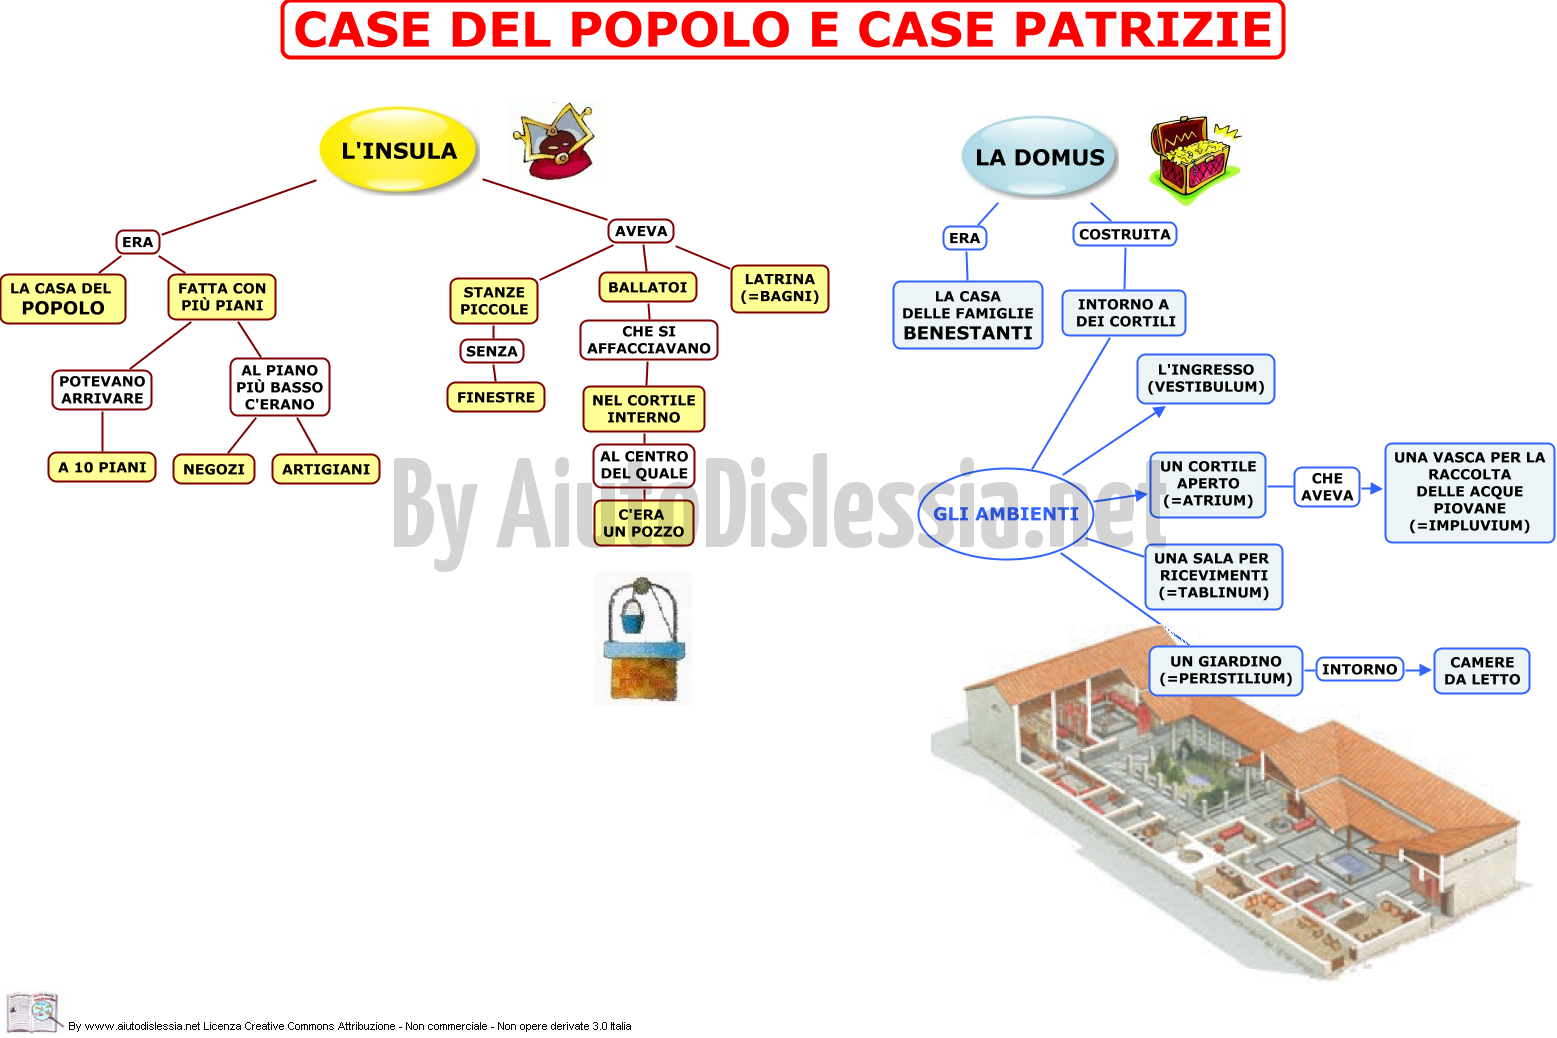 21. CASE DEL POPOLO E CASE PATRIZIE